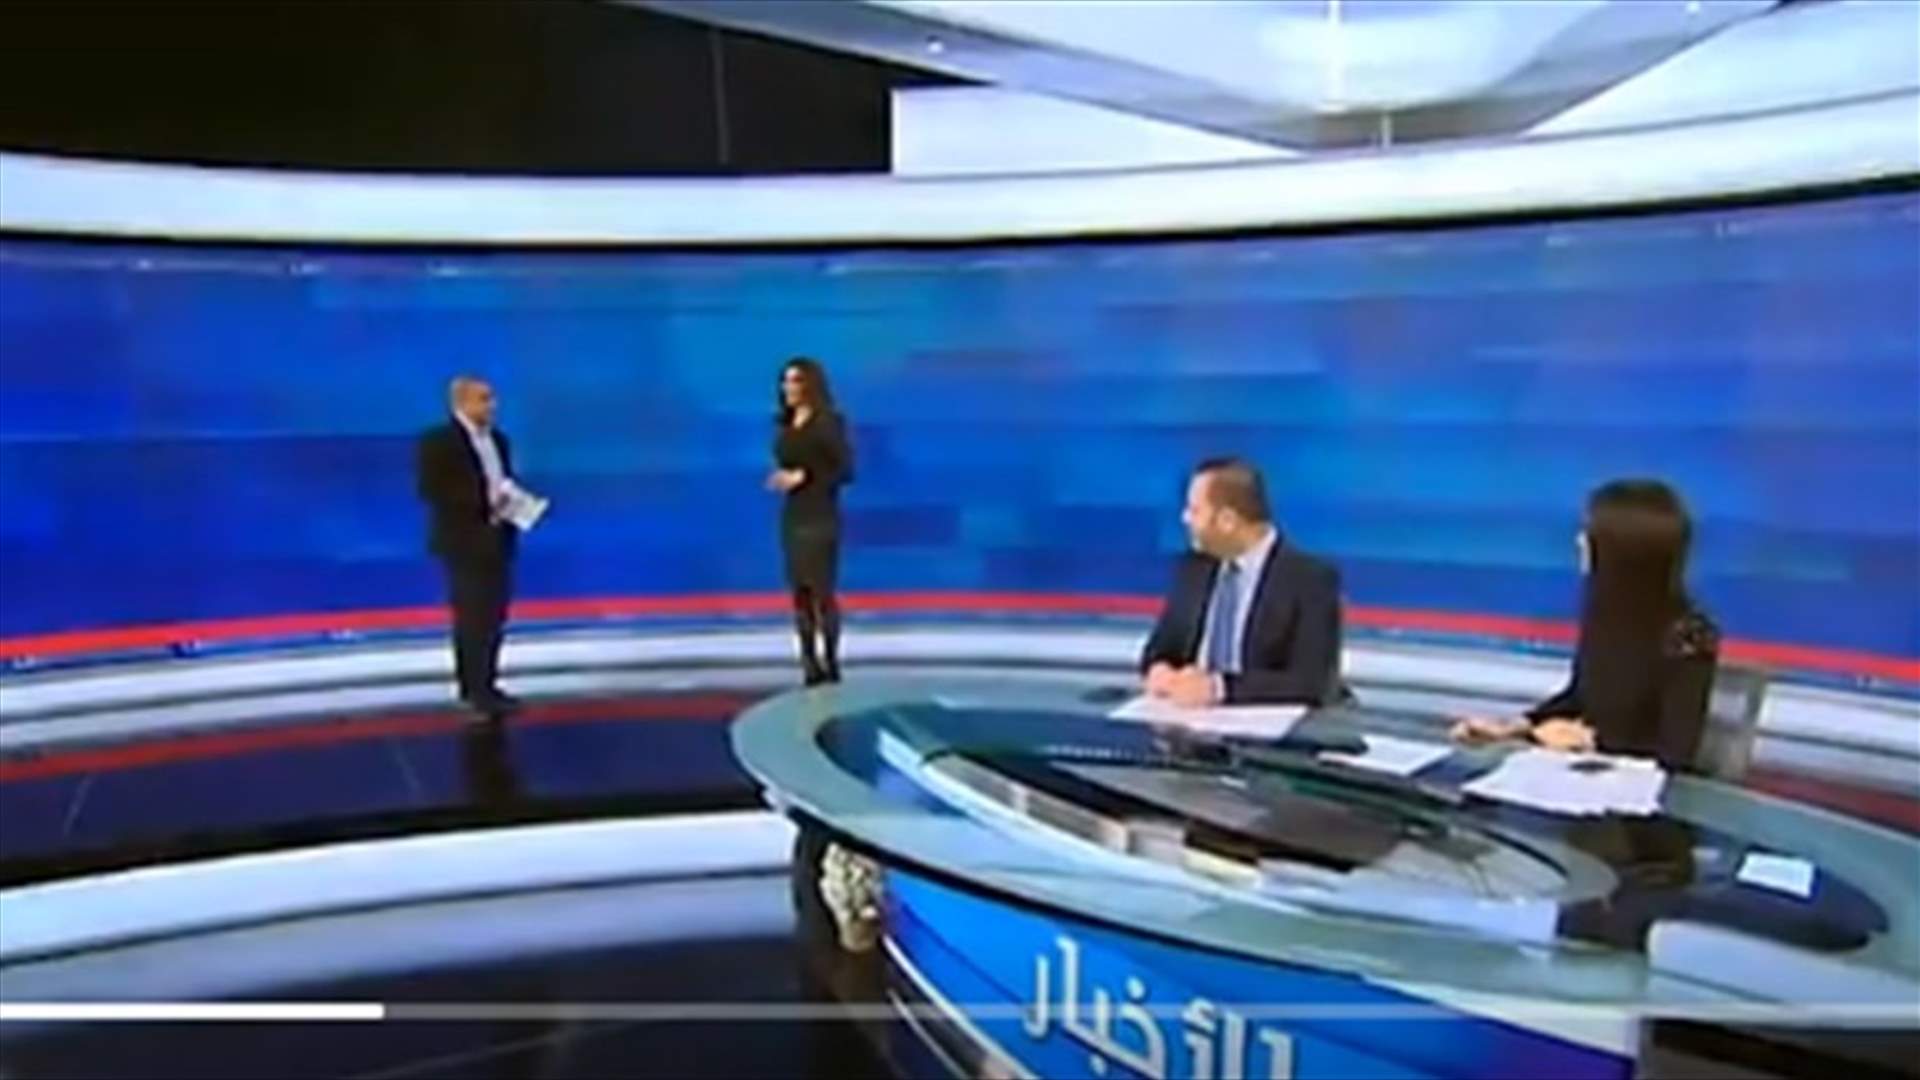 بالفيديو- خالد مجاعص يجعل زينة الراسي تفقد السيطرة وتضحك مباشرة على الهواء...